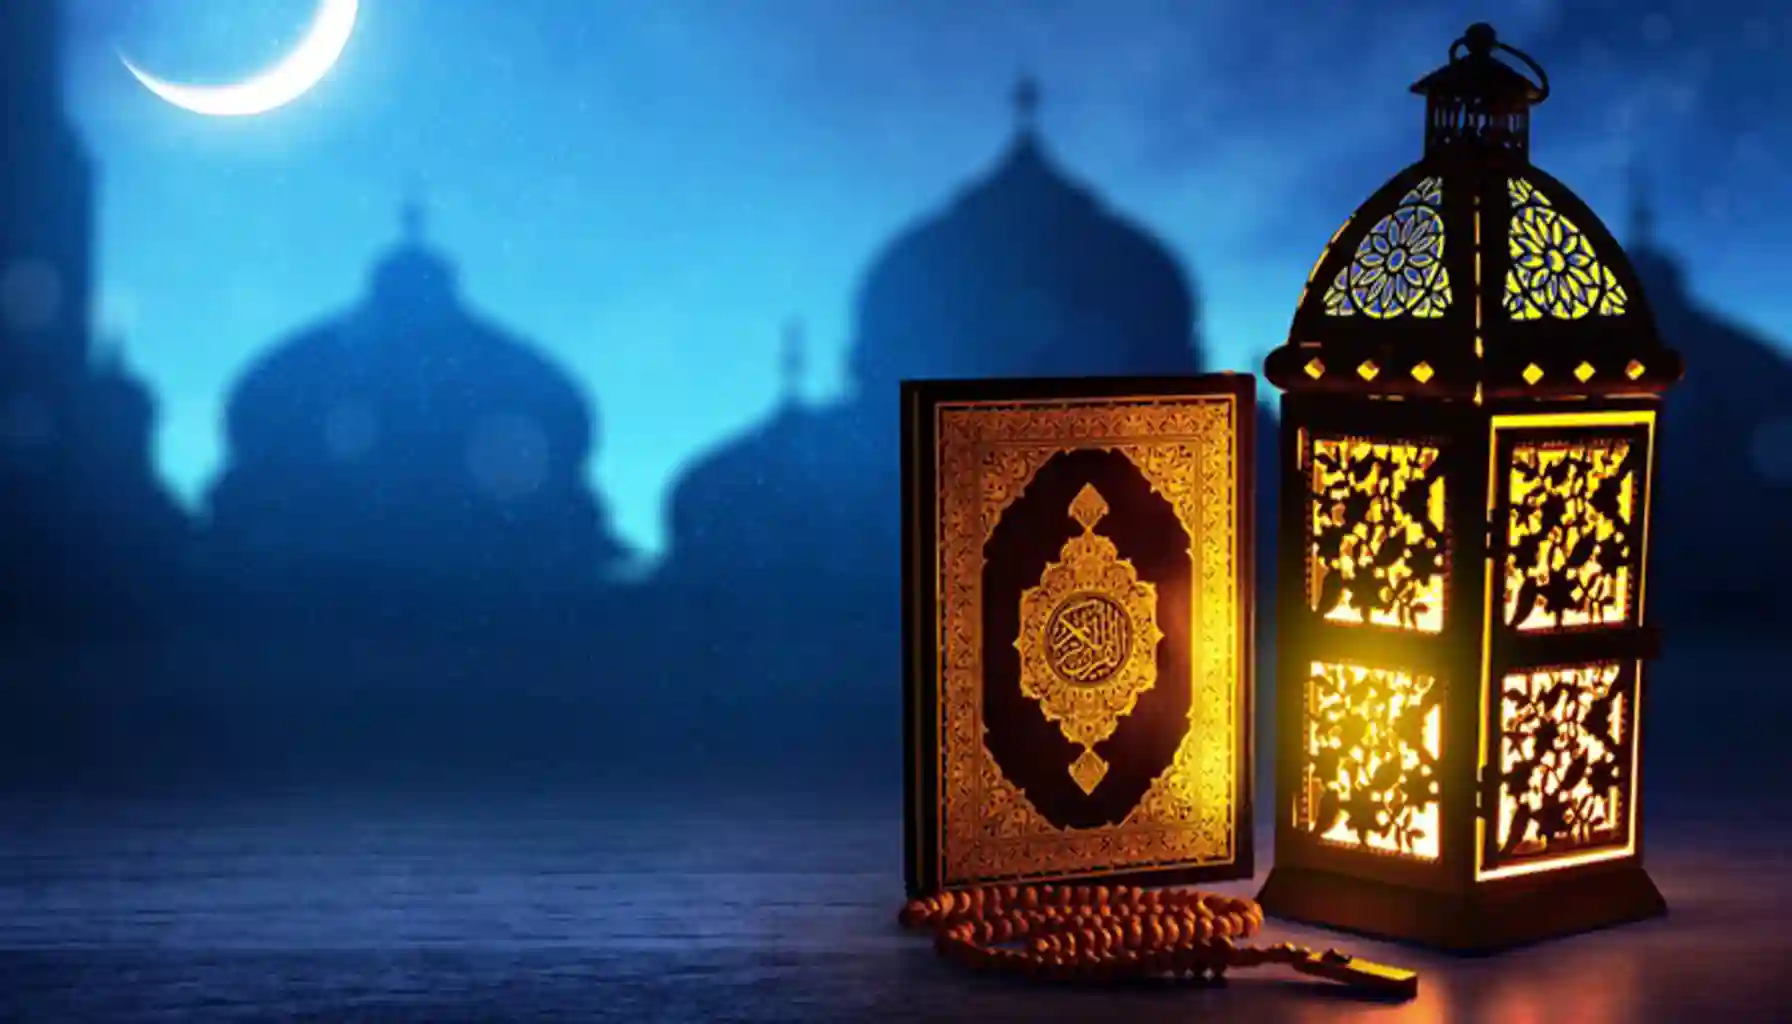 Temukan doa penting selama bulan Ramadan: niat puasa, buka puasa, Tarawih, Lailatul Qadar, I'tikaf, dan zakat fitrah selama Ramadan.